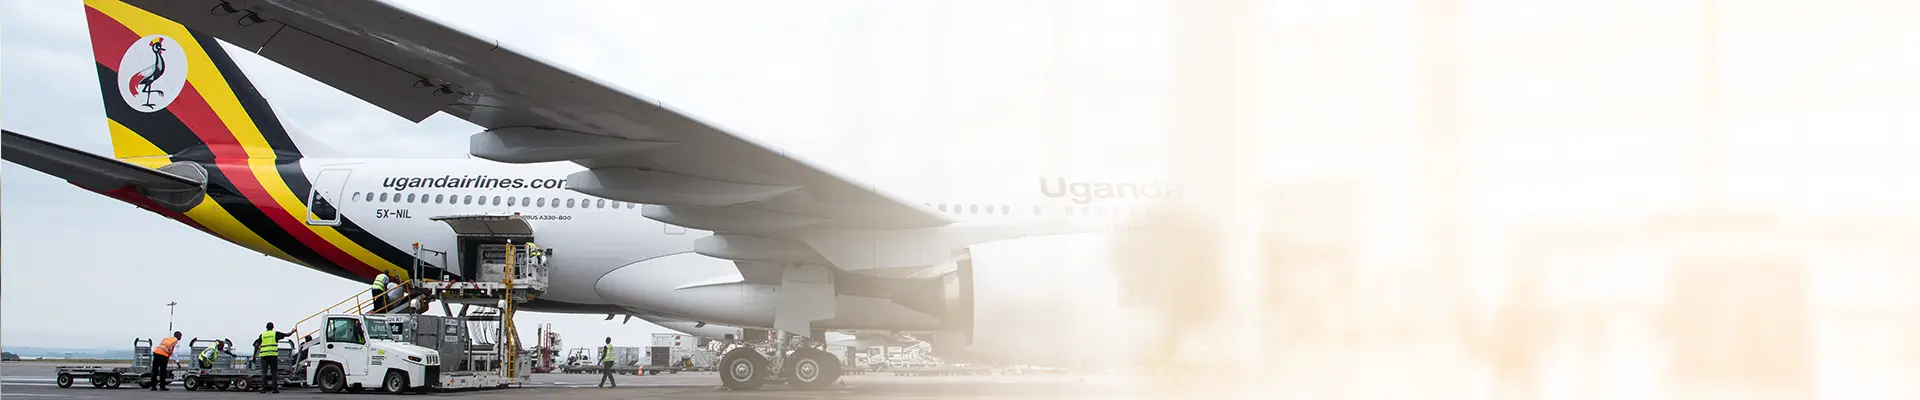 Uganda Airlines - Flights Schedules - Uganda Airlines Cargo